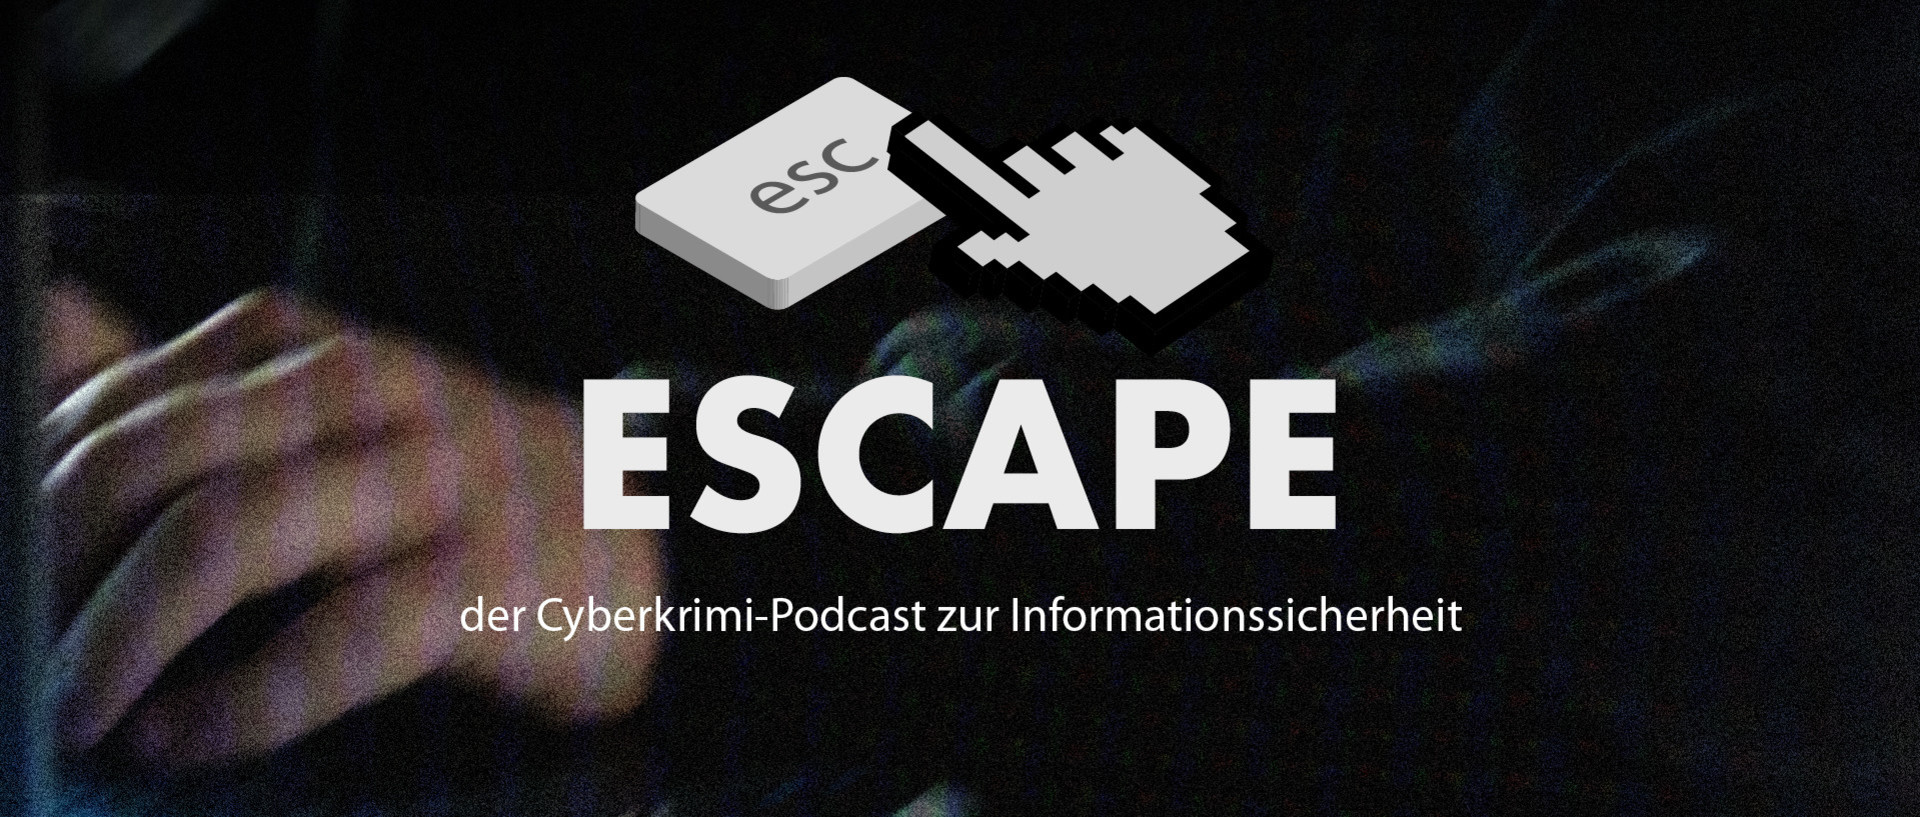 ESCAPE – der Cyberkrimi-Podcast zur Informationssicherheit